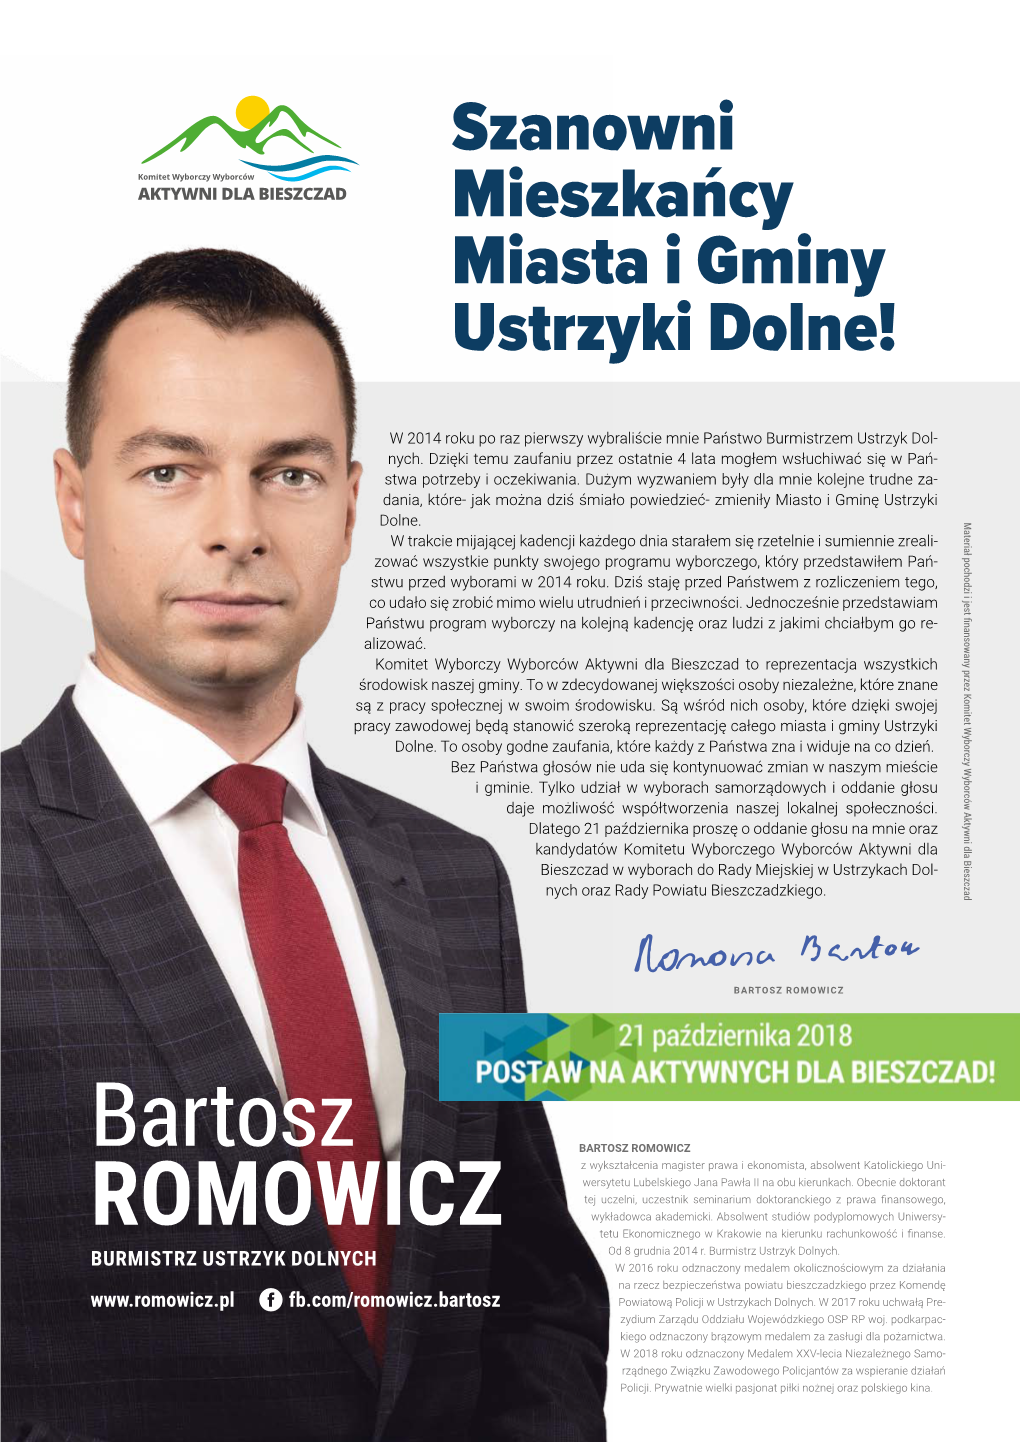 Bartosz Romowicz